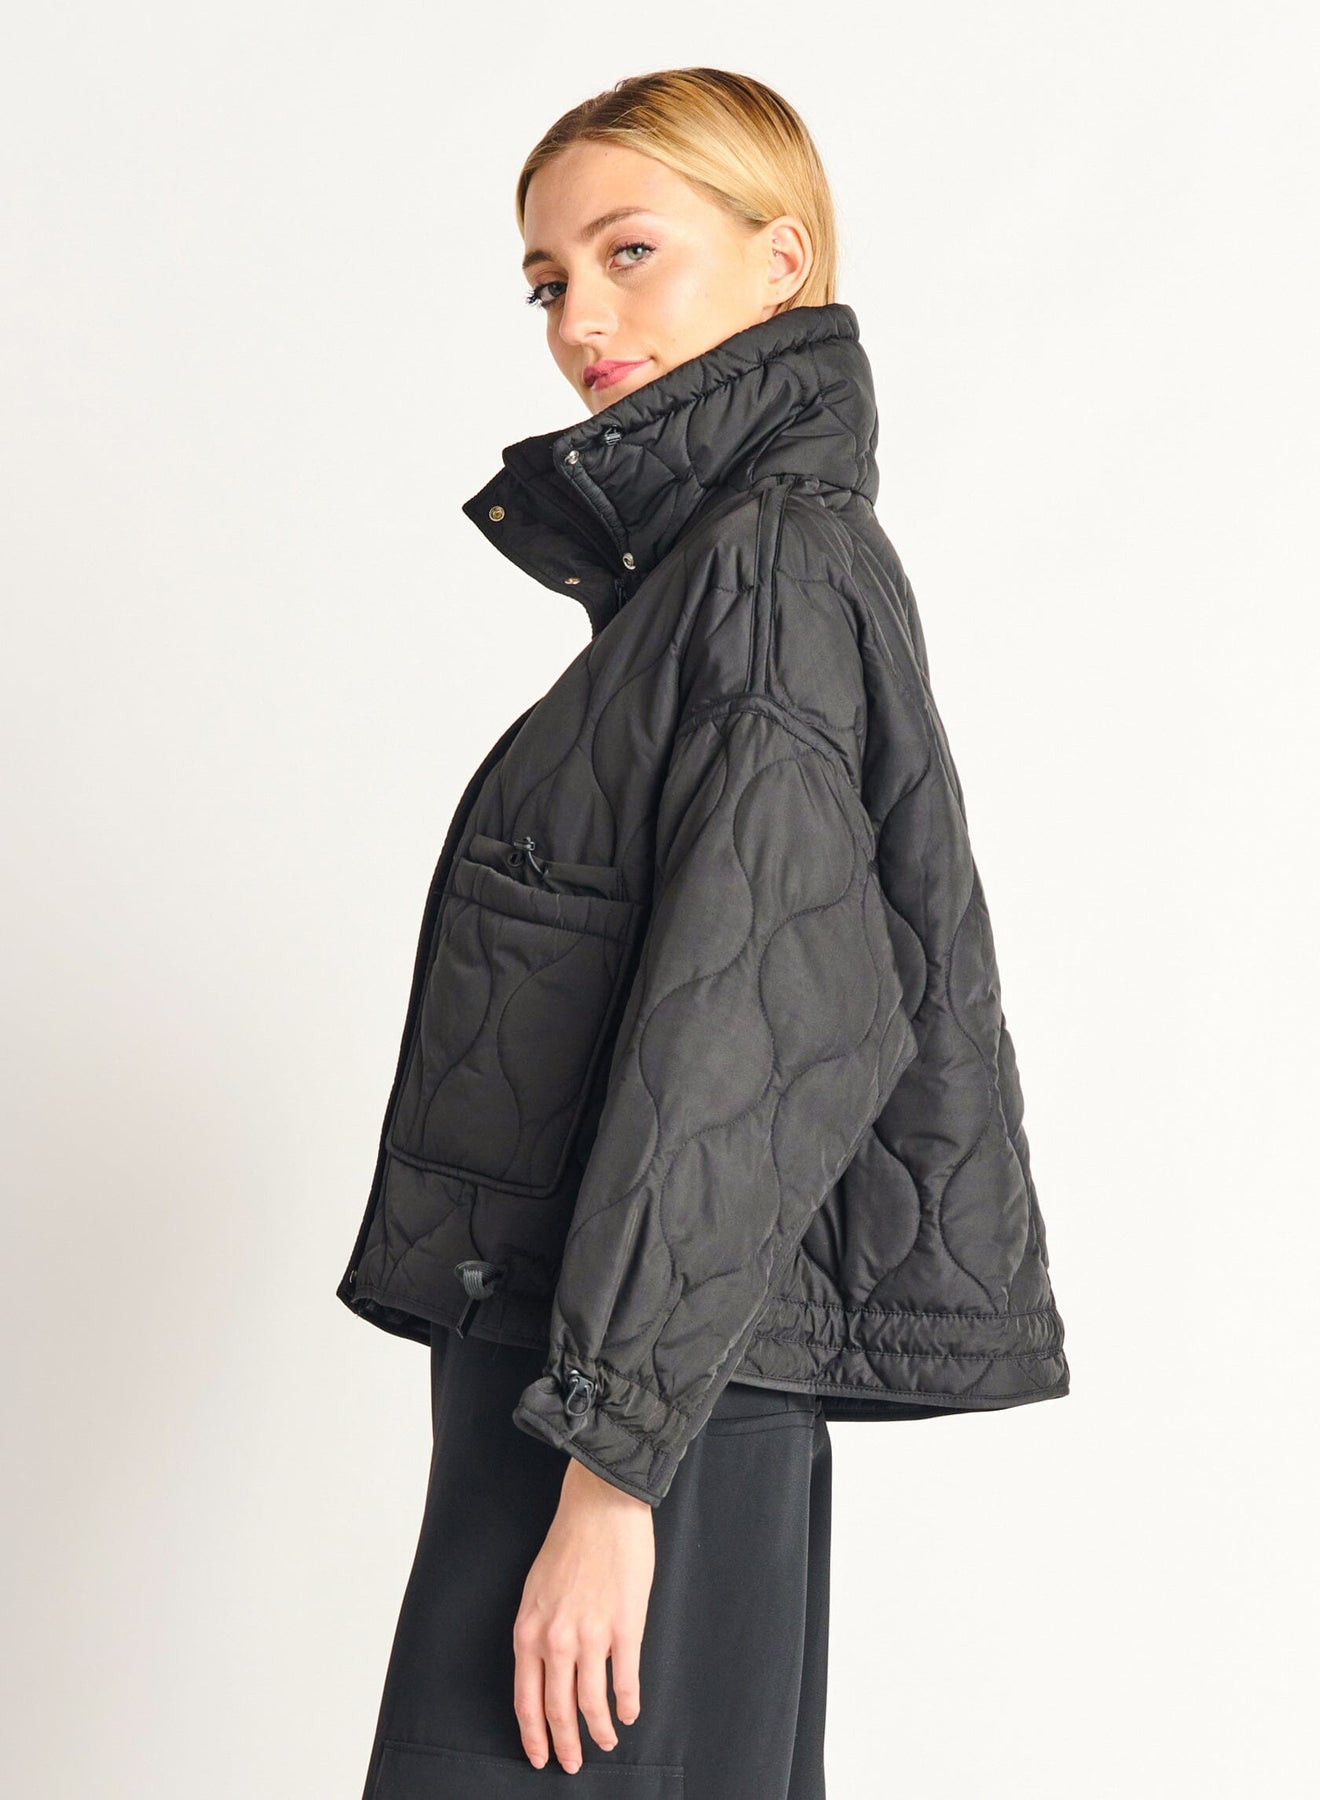 Coats & Jackets – Bella Maas Boutique